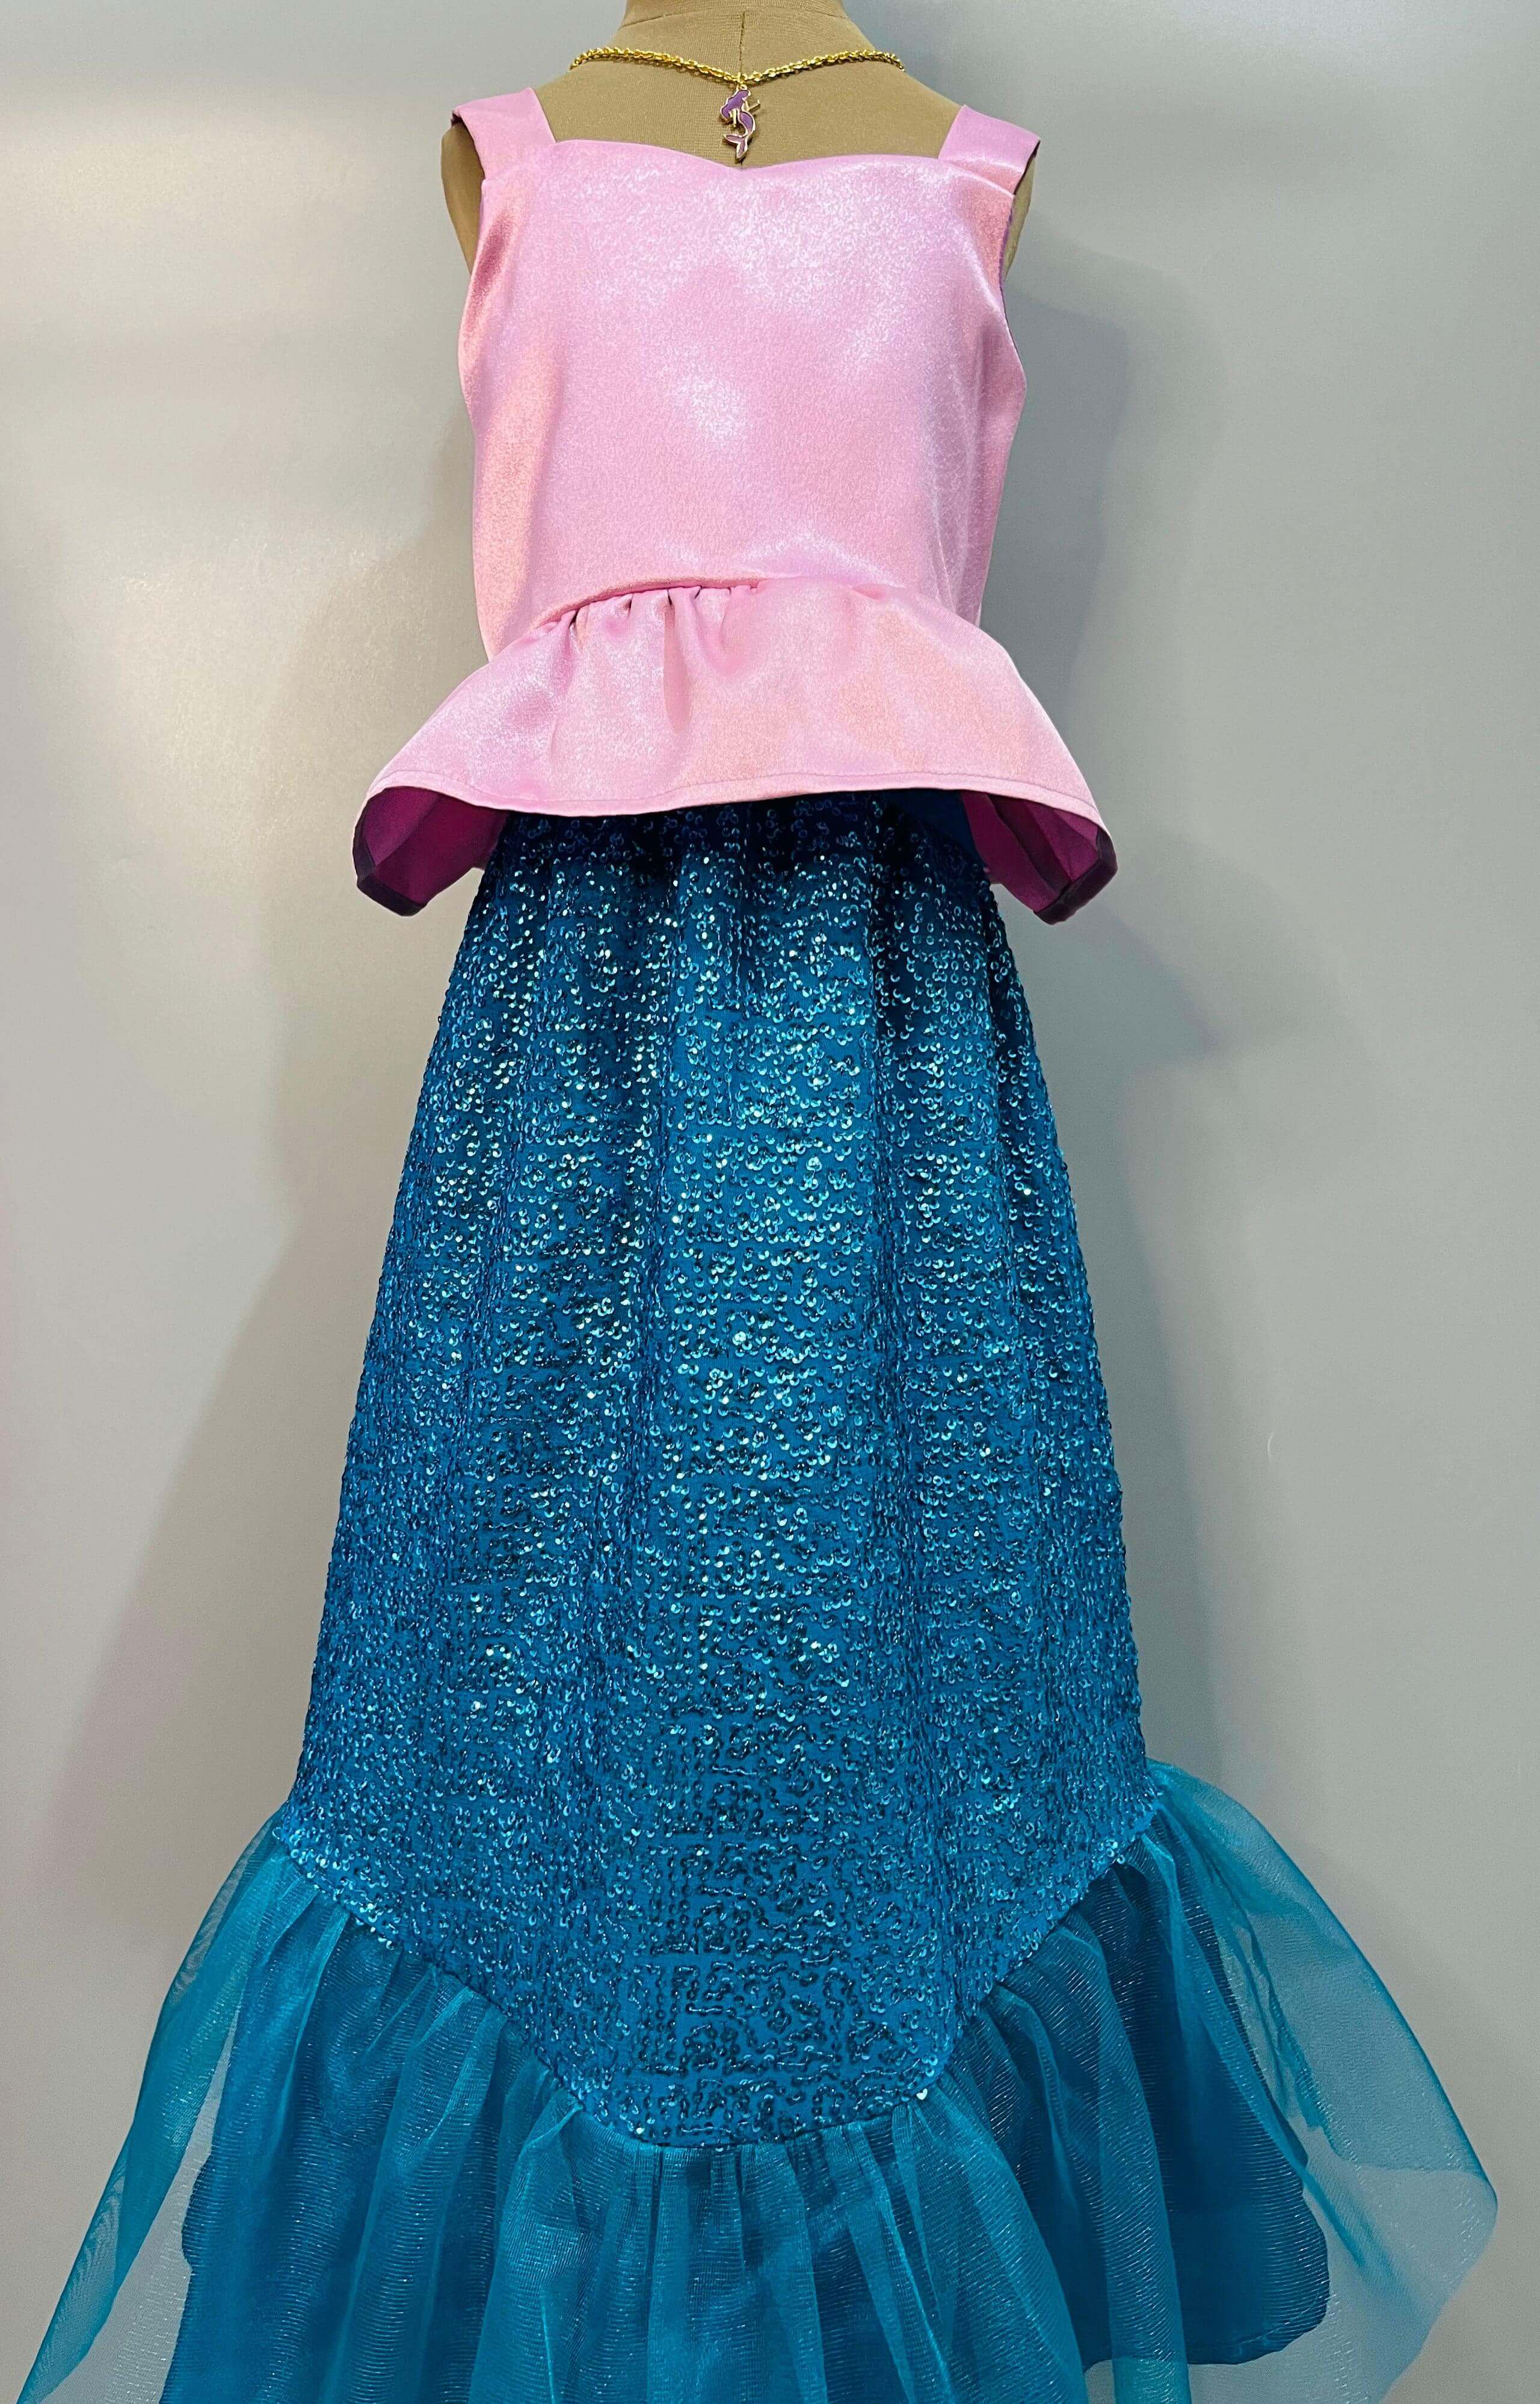 Fishtail Dress - The Mermaid – Ballgown Divas Beverley